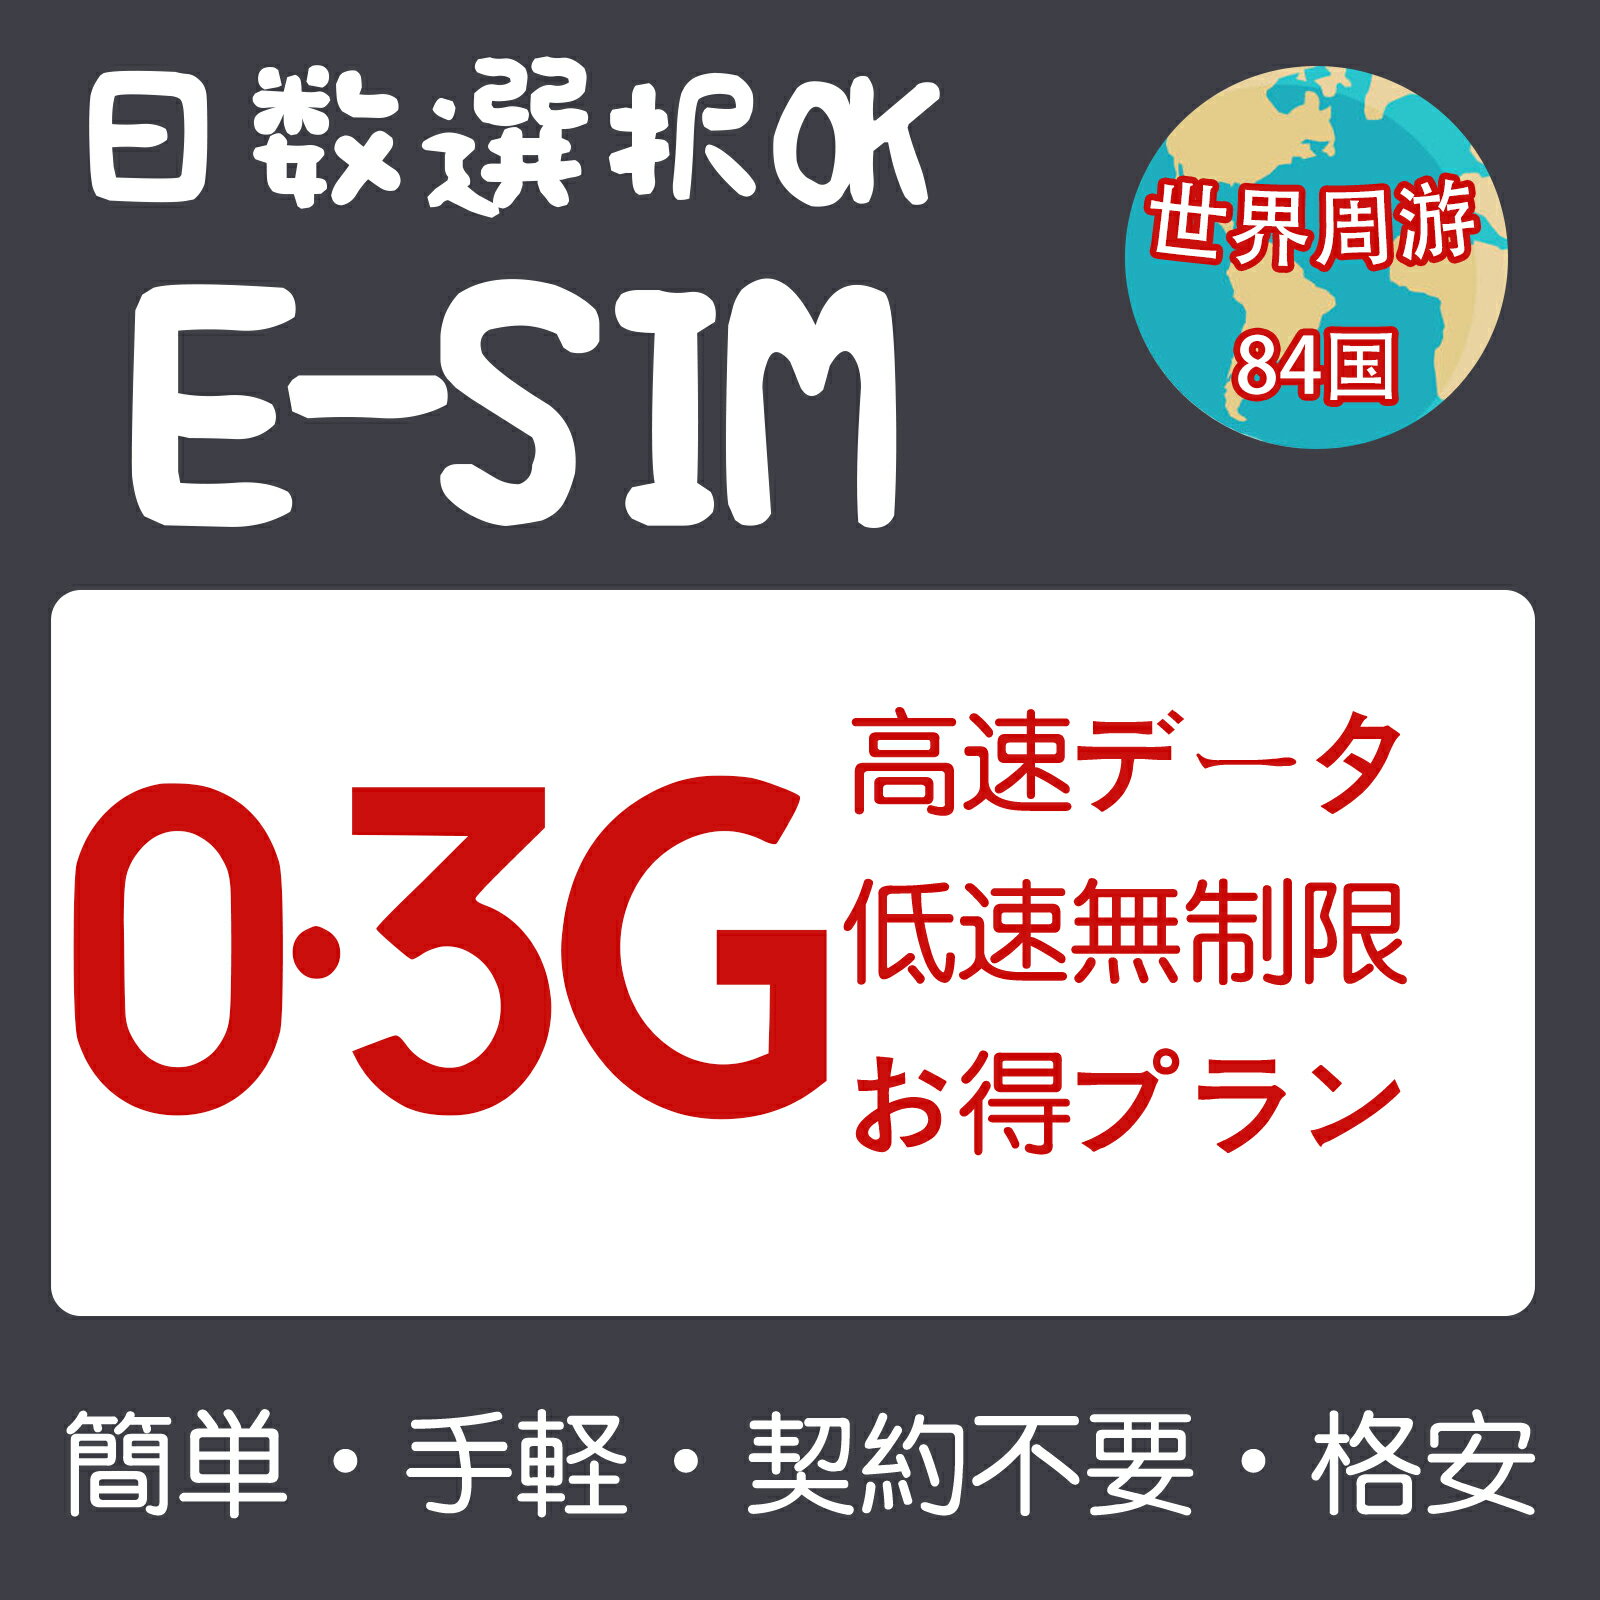 世界周遊<strong>eSIM</strong> 84国 300MB 3GB 5GB 日本<strong>eSIM</strong> 米国<strong>eSIM</strong> 韓国<strong>eSIM</strong> 中国<strong>eSIM</strong> 台湾 <strong>香港</strong> マカオ フィリピン タイ フランス ドイツ イギリス シンガポール 3日間～30日間 超高速 プリペイド<strong>eSIM</strong> メール納品 simカード 旅行神器 出張神器 デザリング可 本人認証不要 WIFIより速い